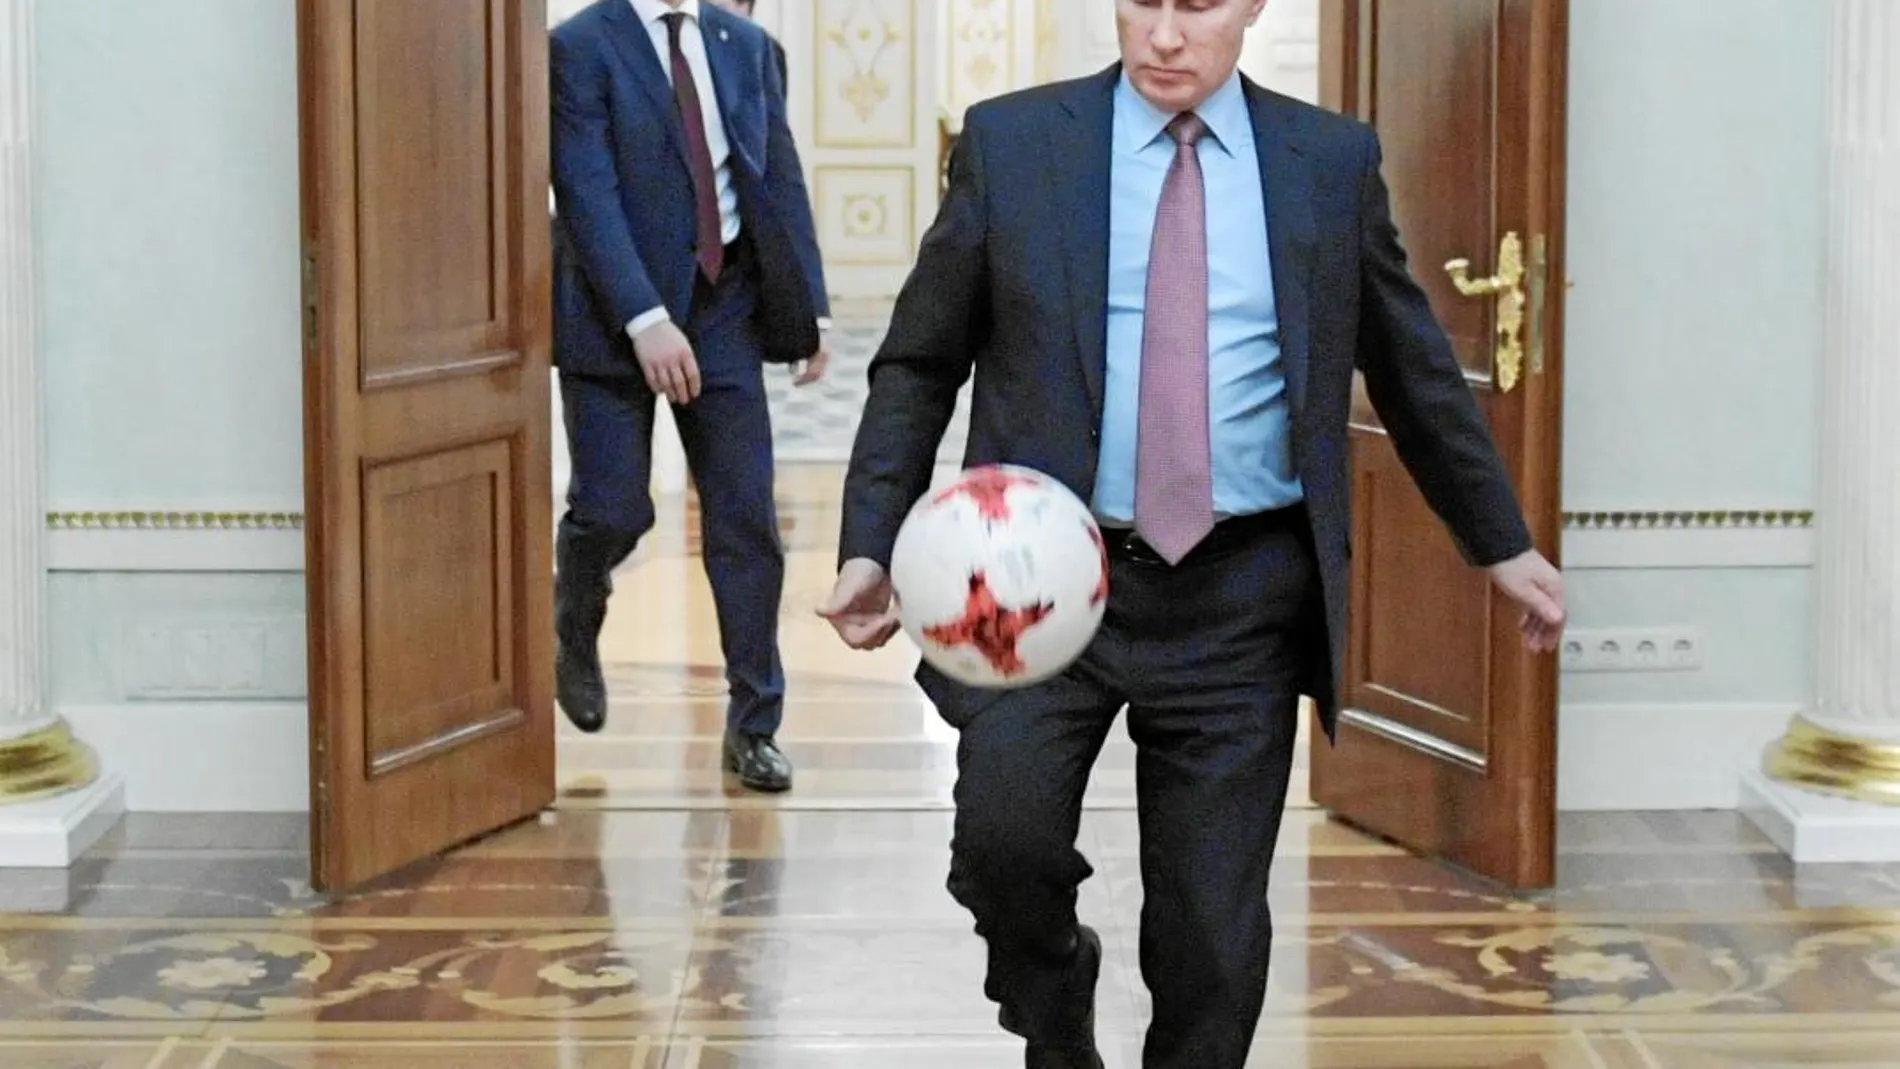 El museo de San Petersburgo se niega a dejar entrar gratis a los aficionados del Mundial de fútbol como pretende el Gobierno ruso / Efe